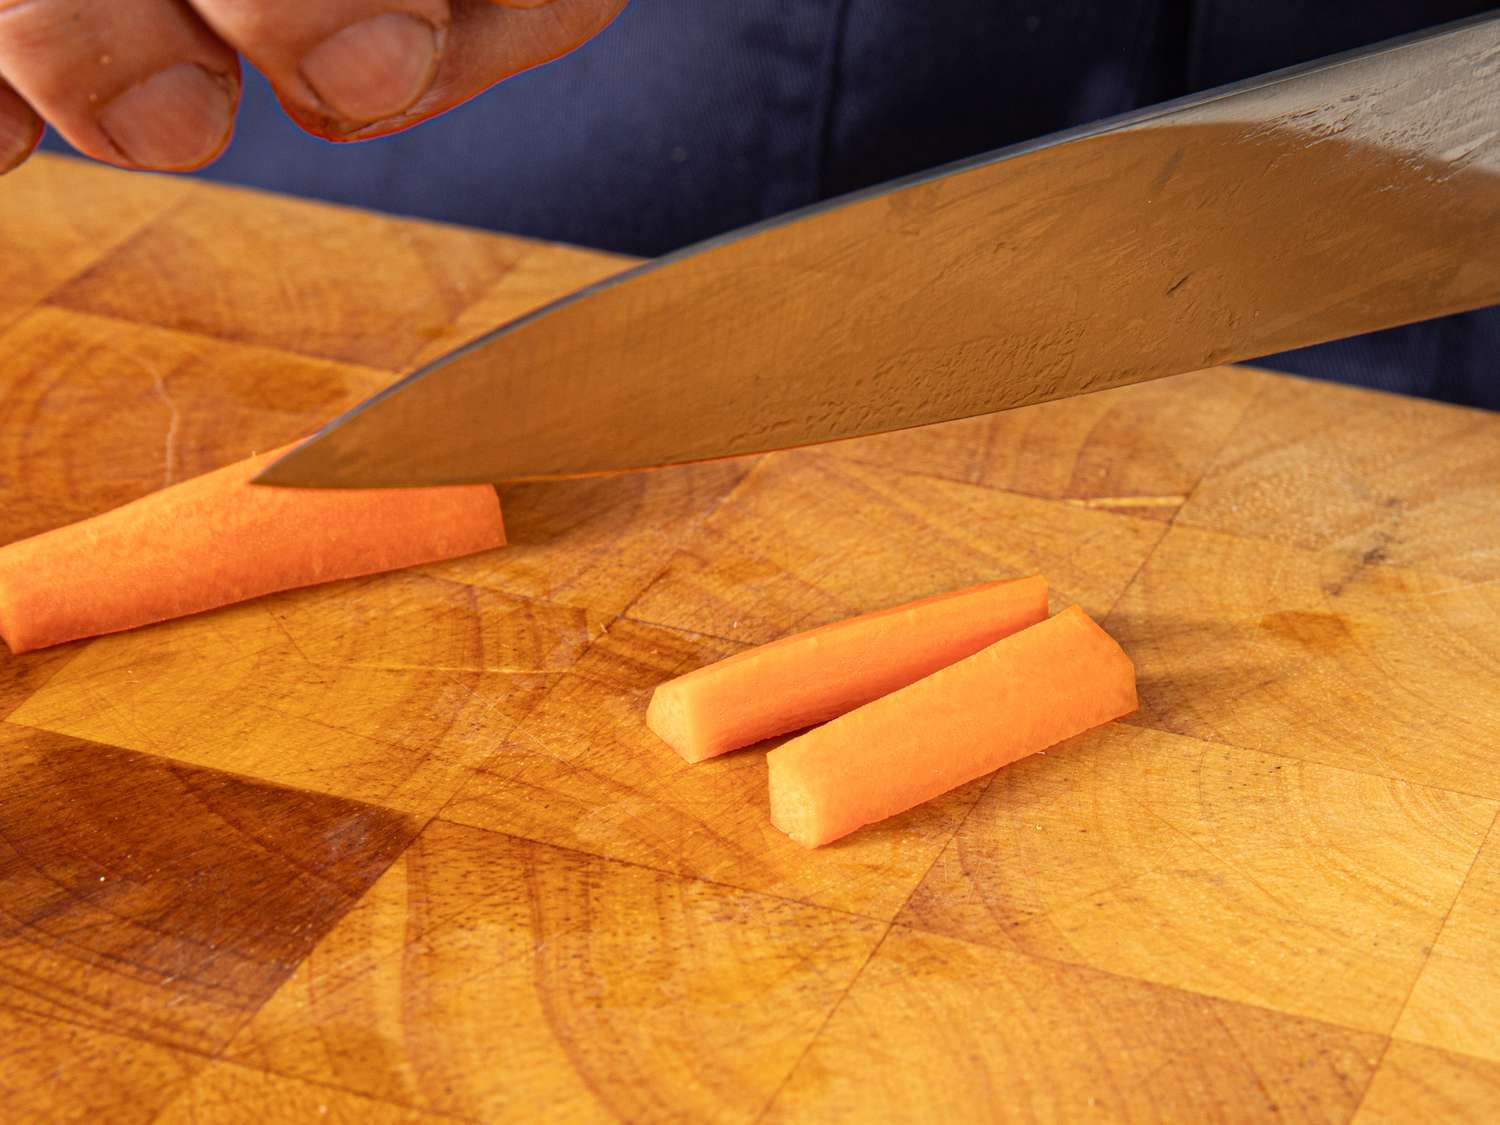 Carrots cut into batons